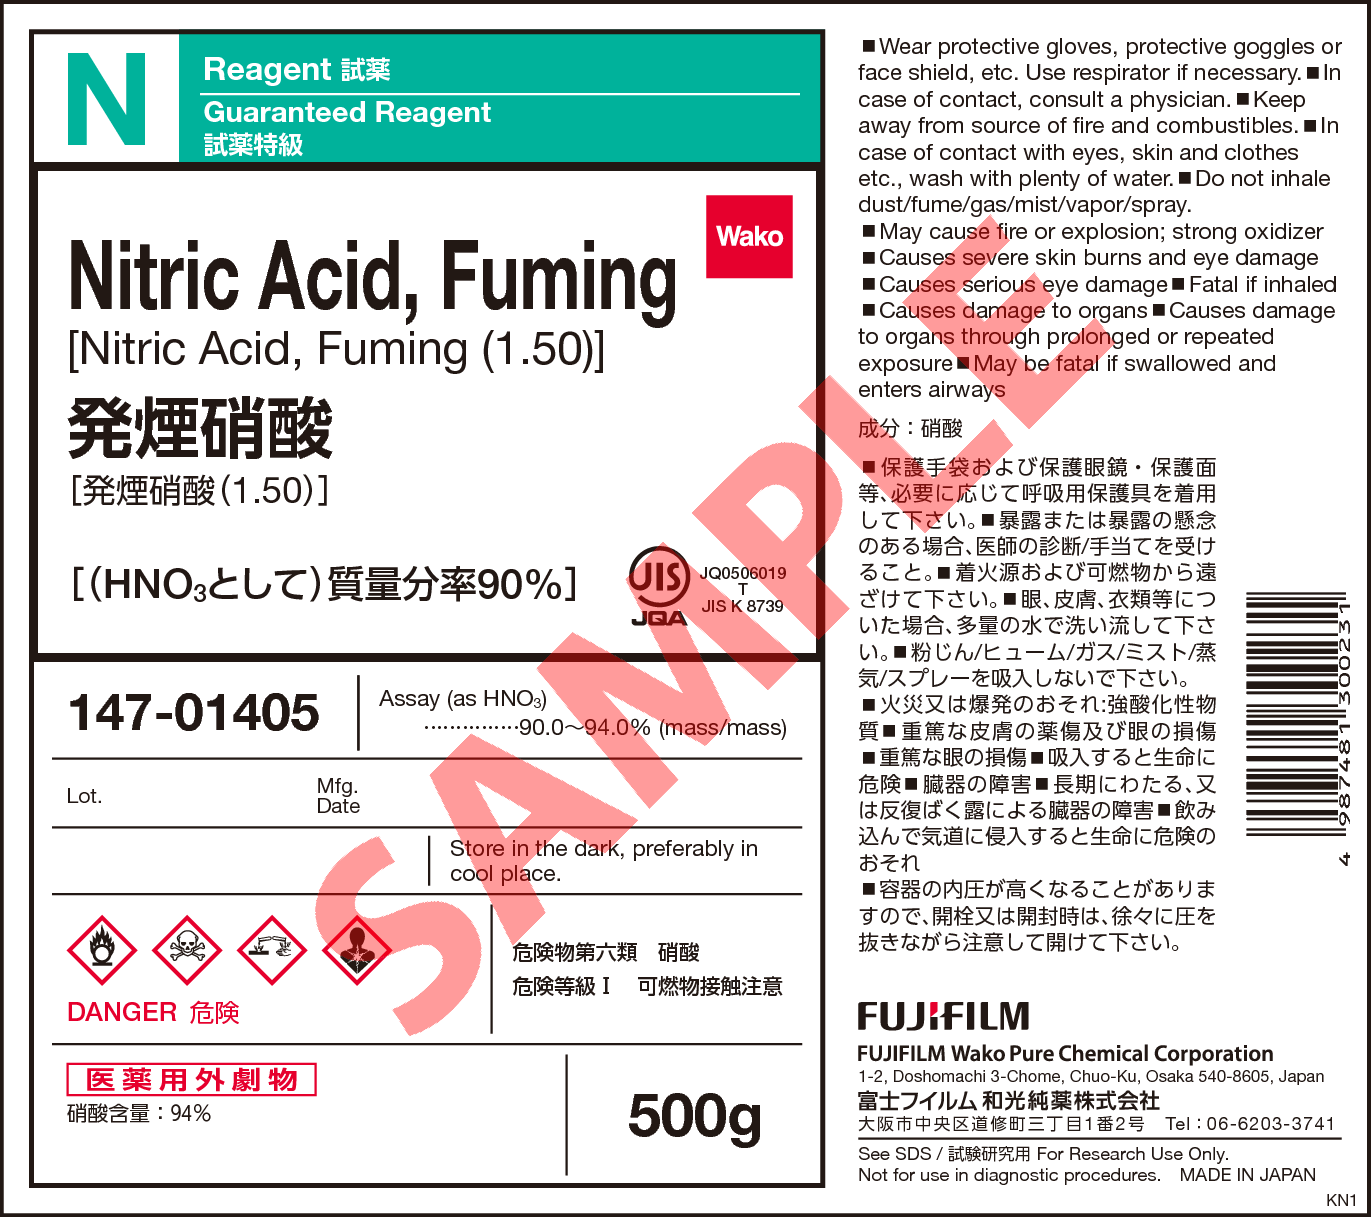 52583-42-3・発煙硝酸 (1.50)・Nitric Acid, Fuming (1.50)・145